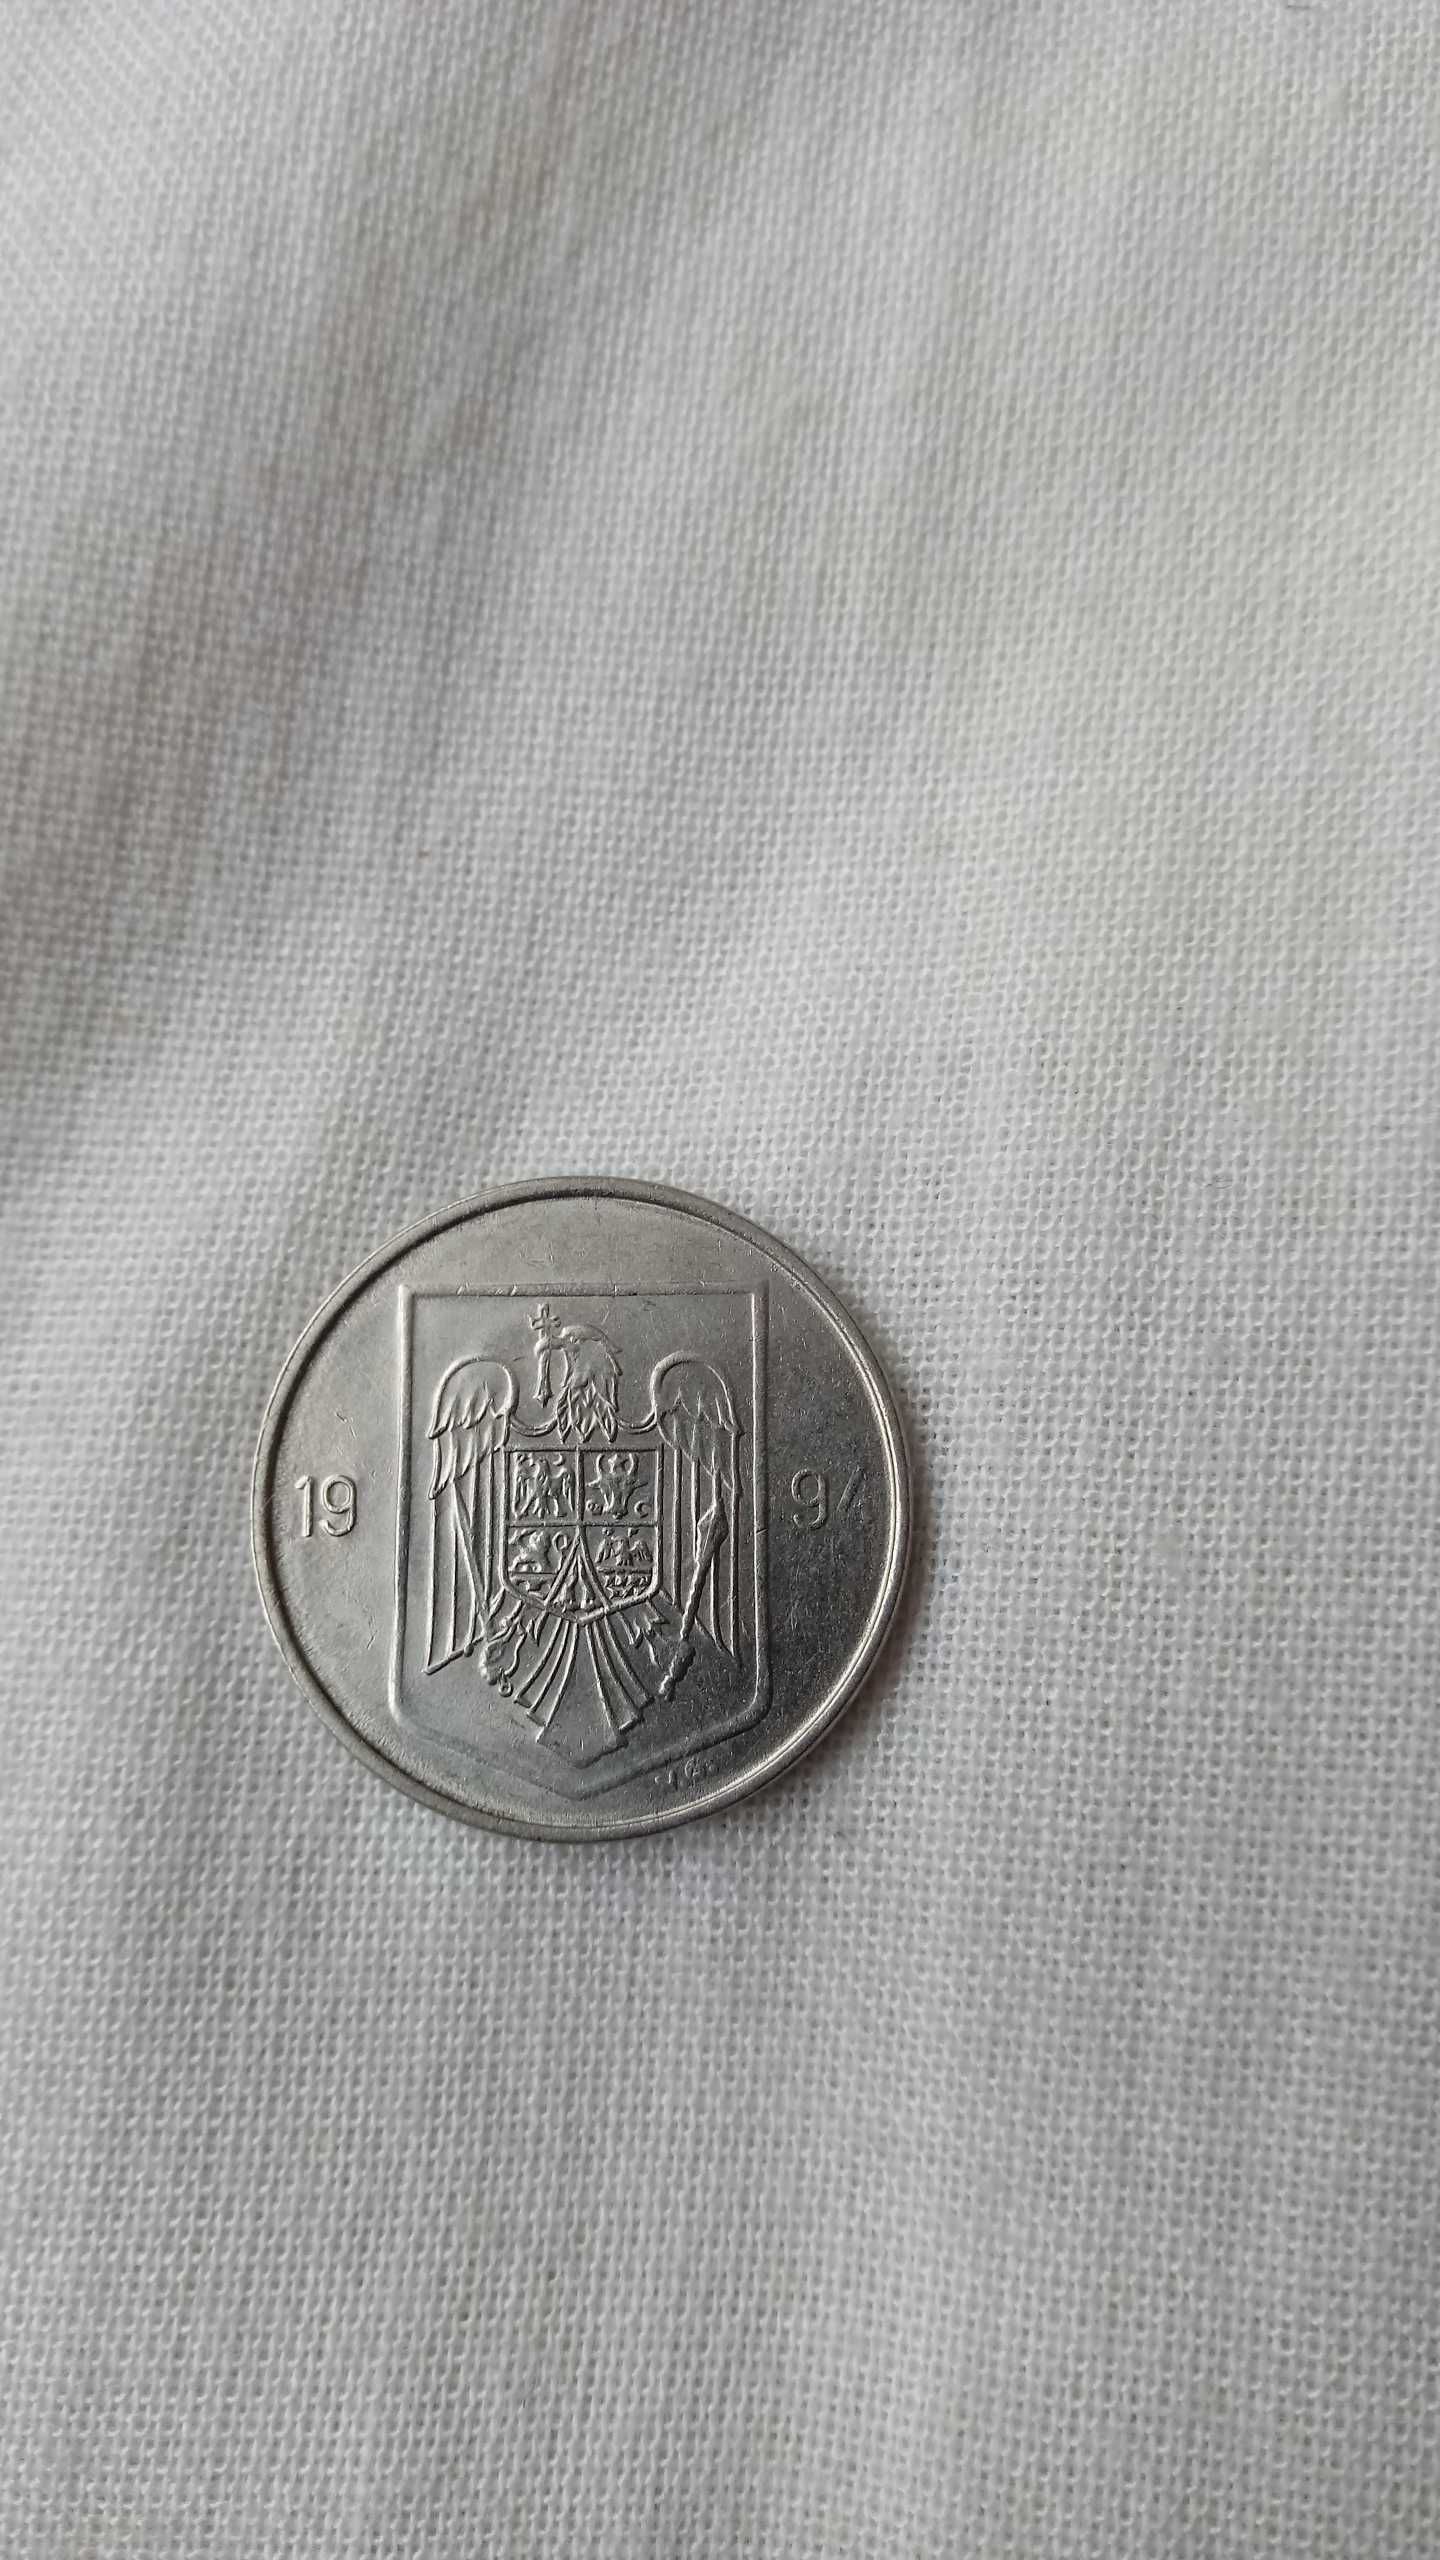 Moneda 5 Lei Anul 1993 si 1994 Romania